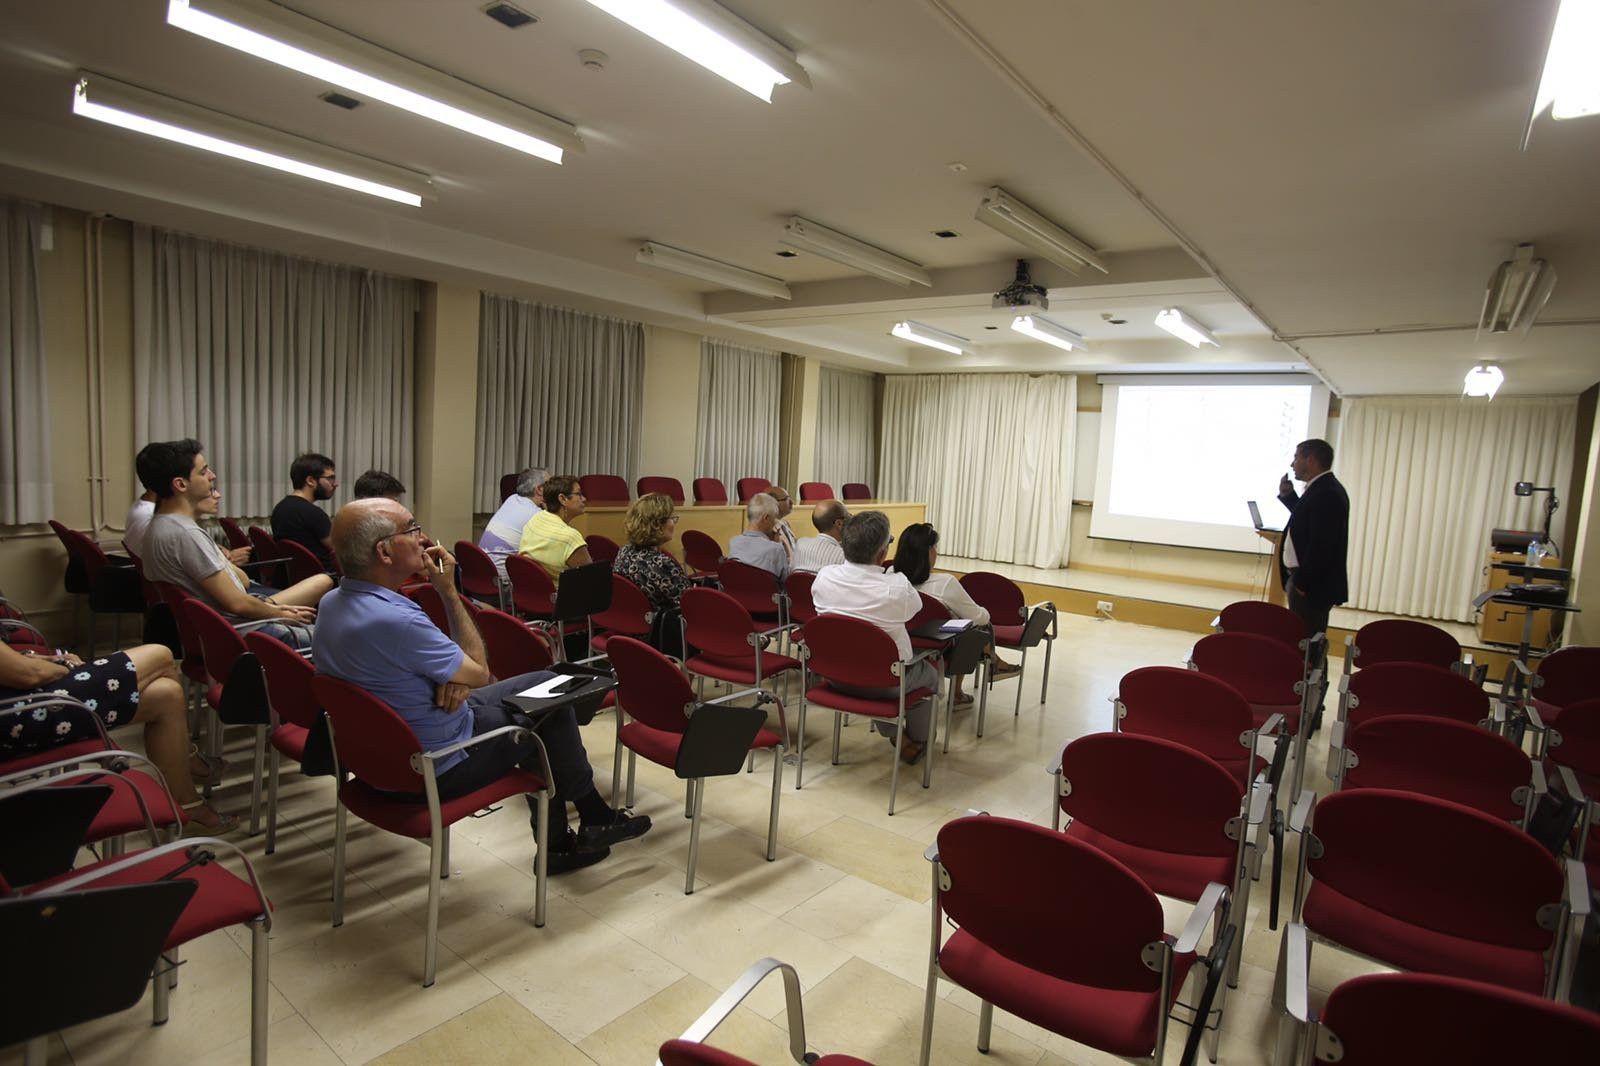  El presidente de la Sociedad de Química de Cuba imparte una conferencia en la Universidad de Salamanca 